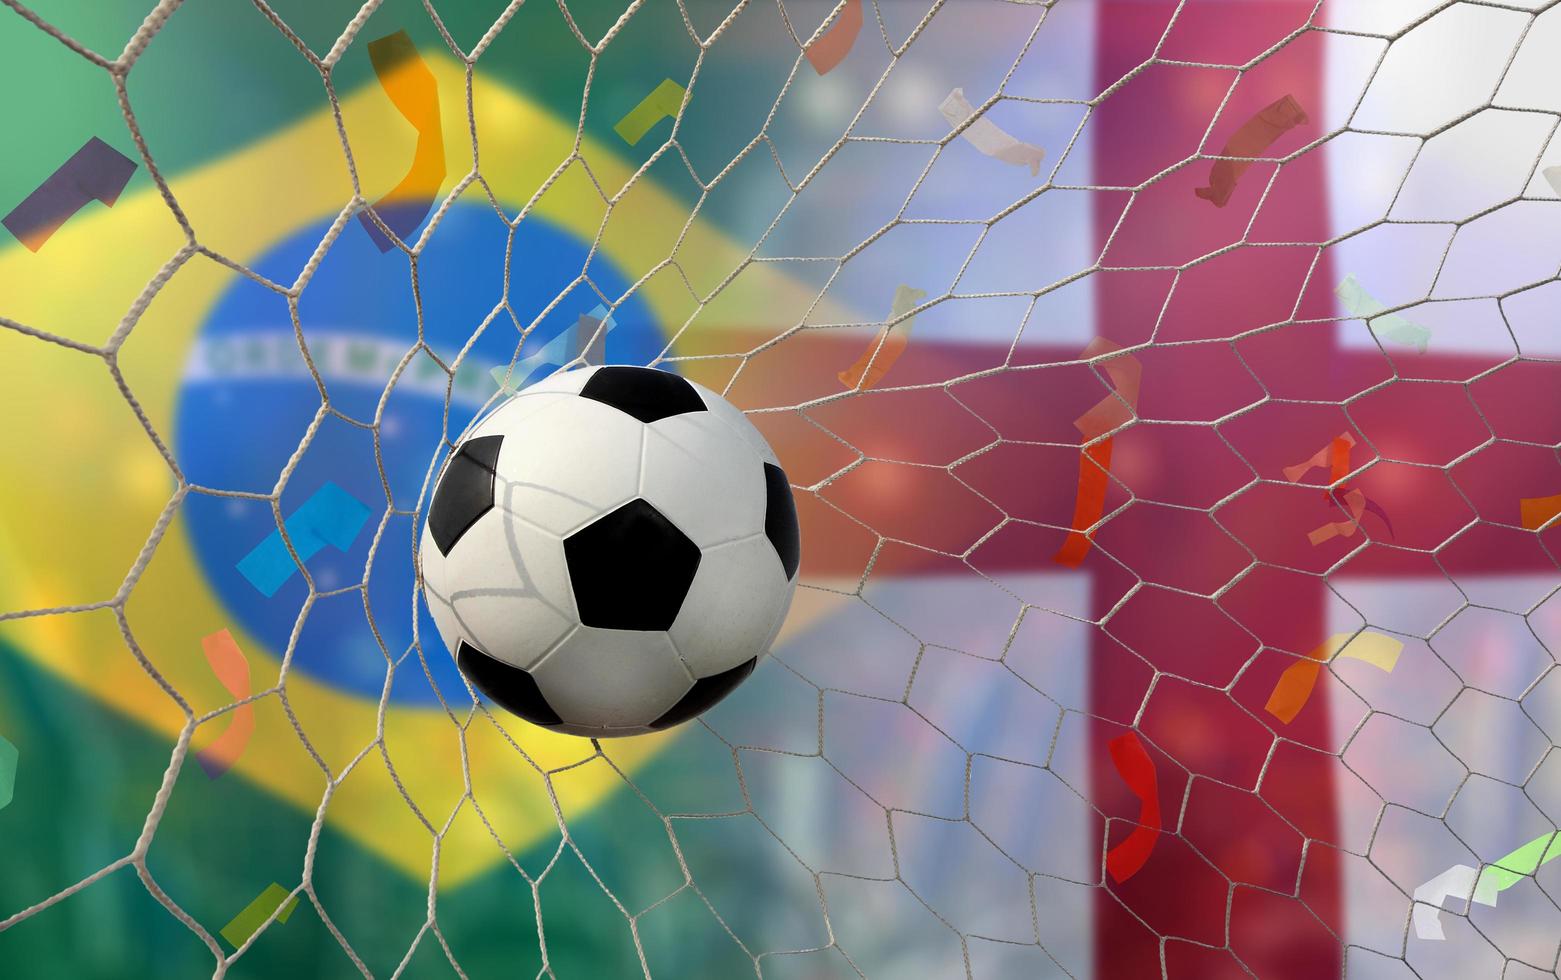 competición de copa de fútbol entre el nacional de brasil y el nacional de inglaterra. foto